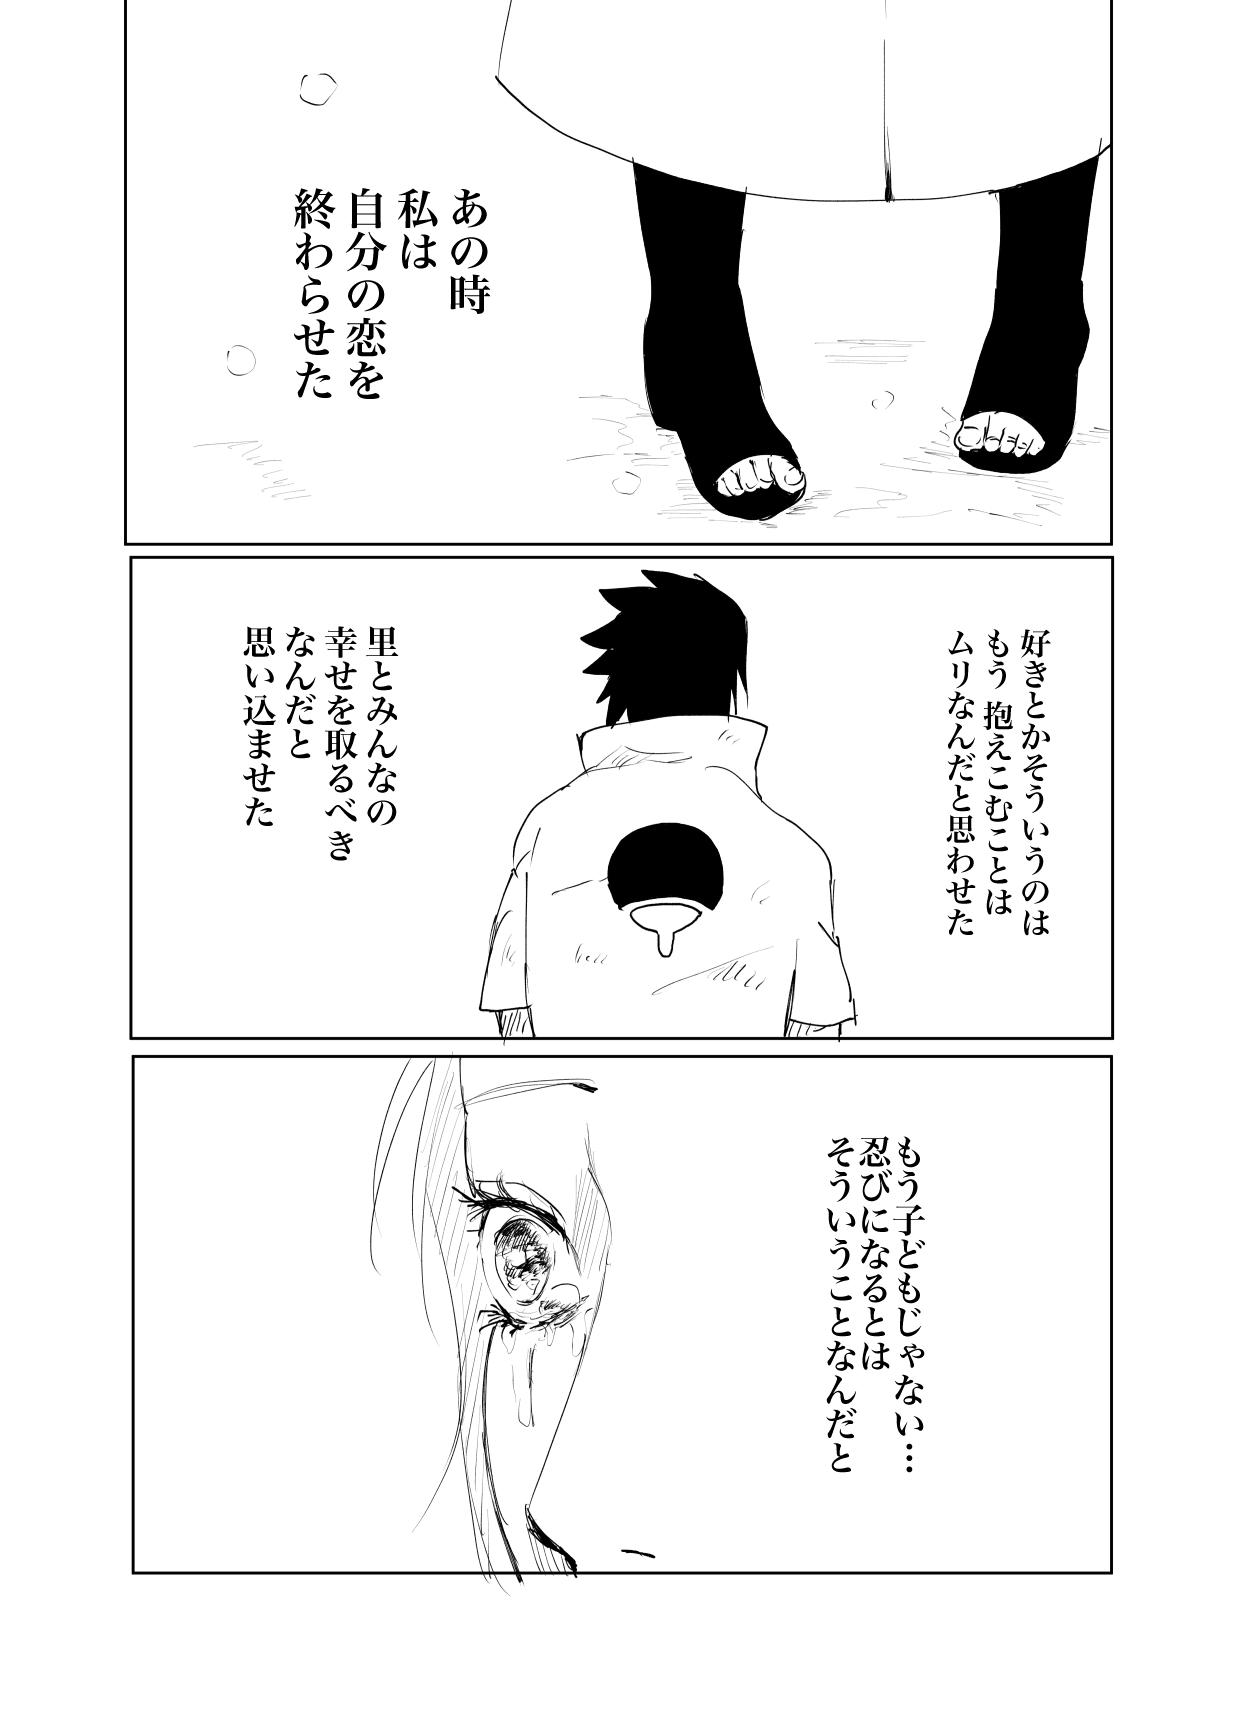 嘘告白漫画 29